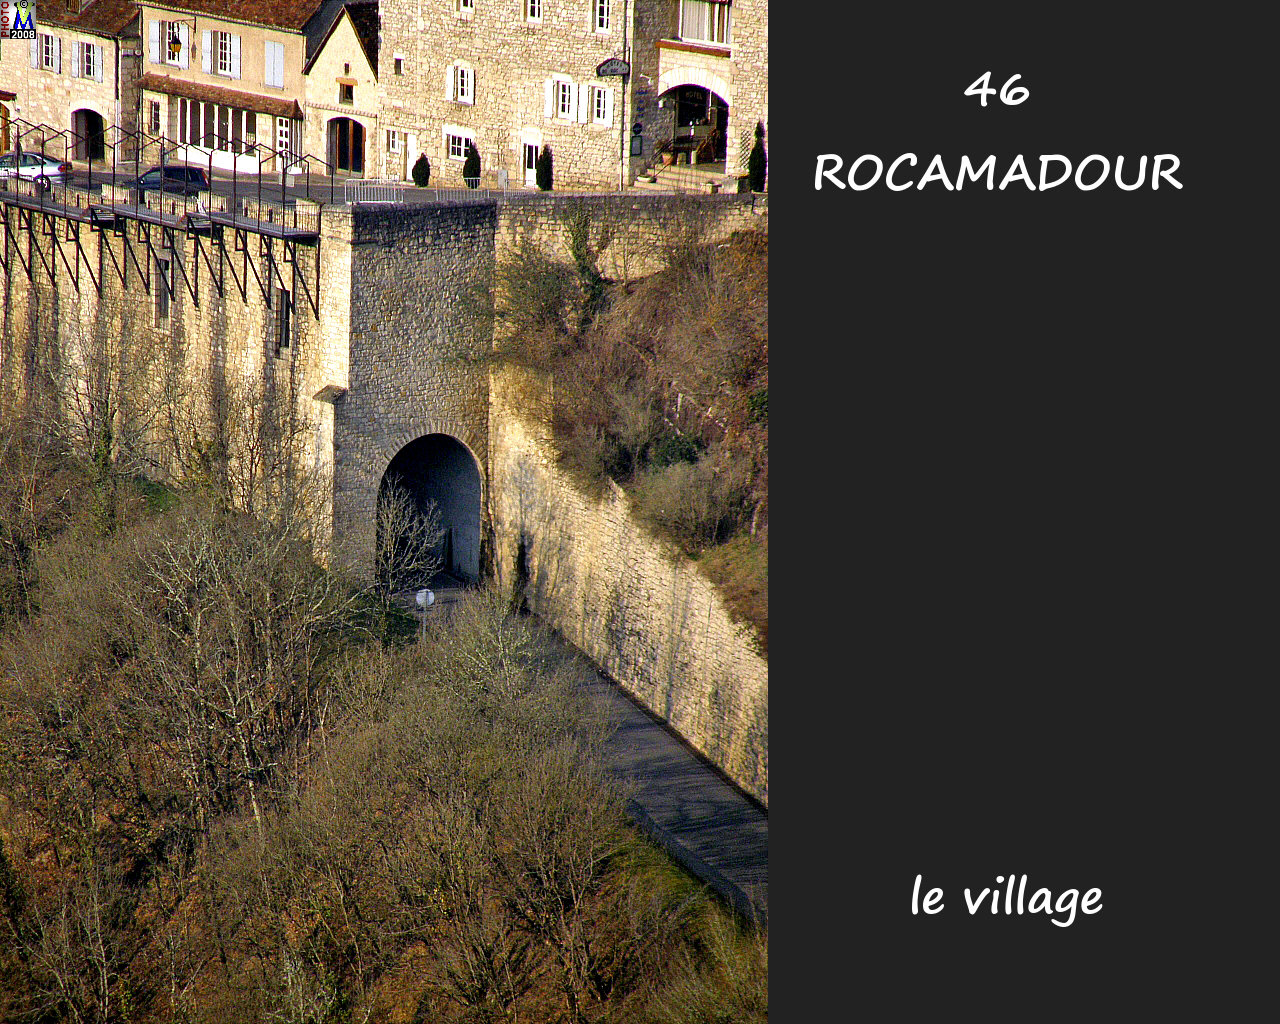 46ROCAMADOUR_village_100.jpg